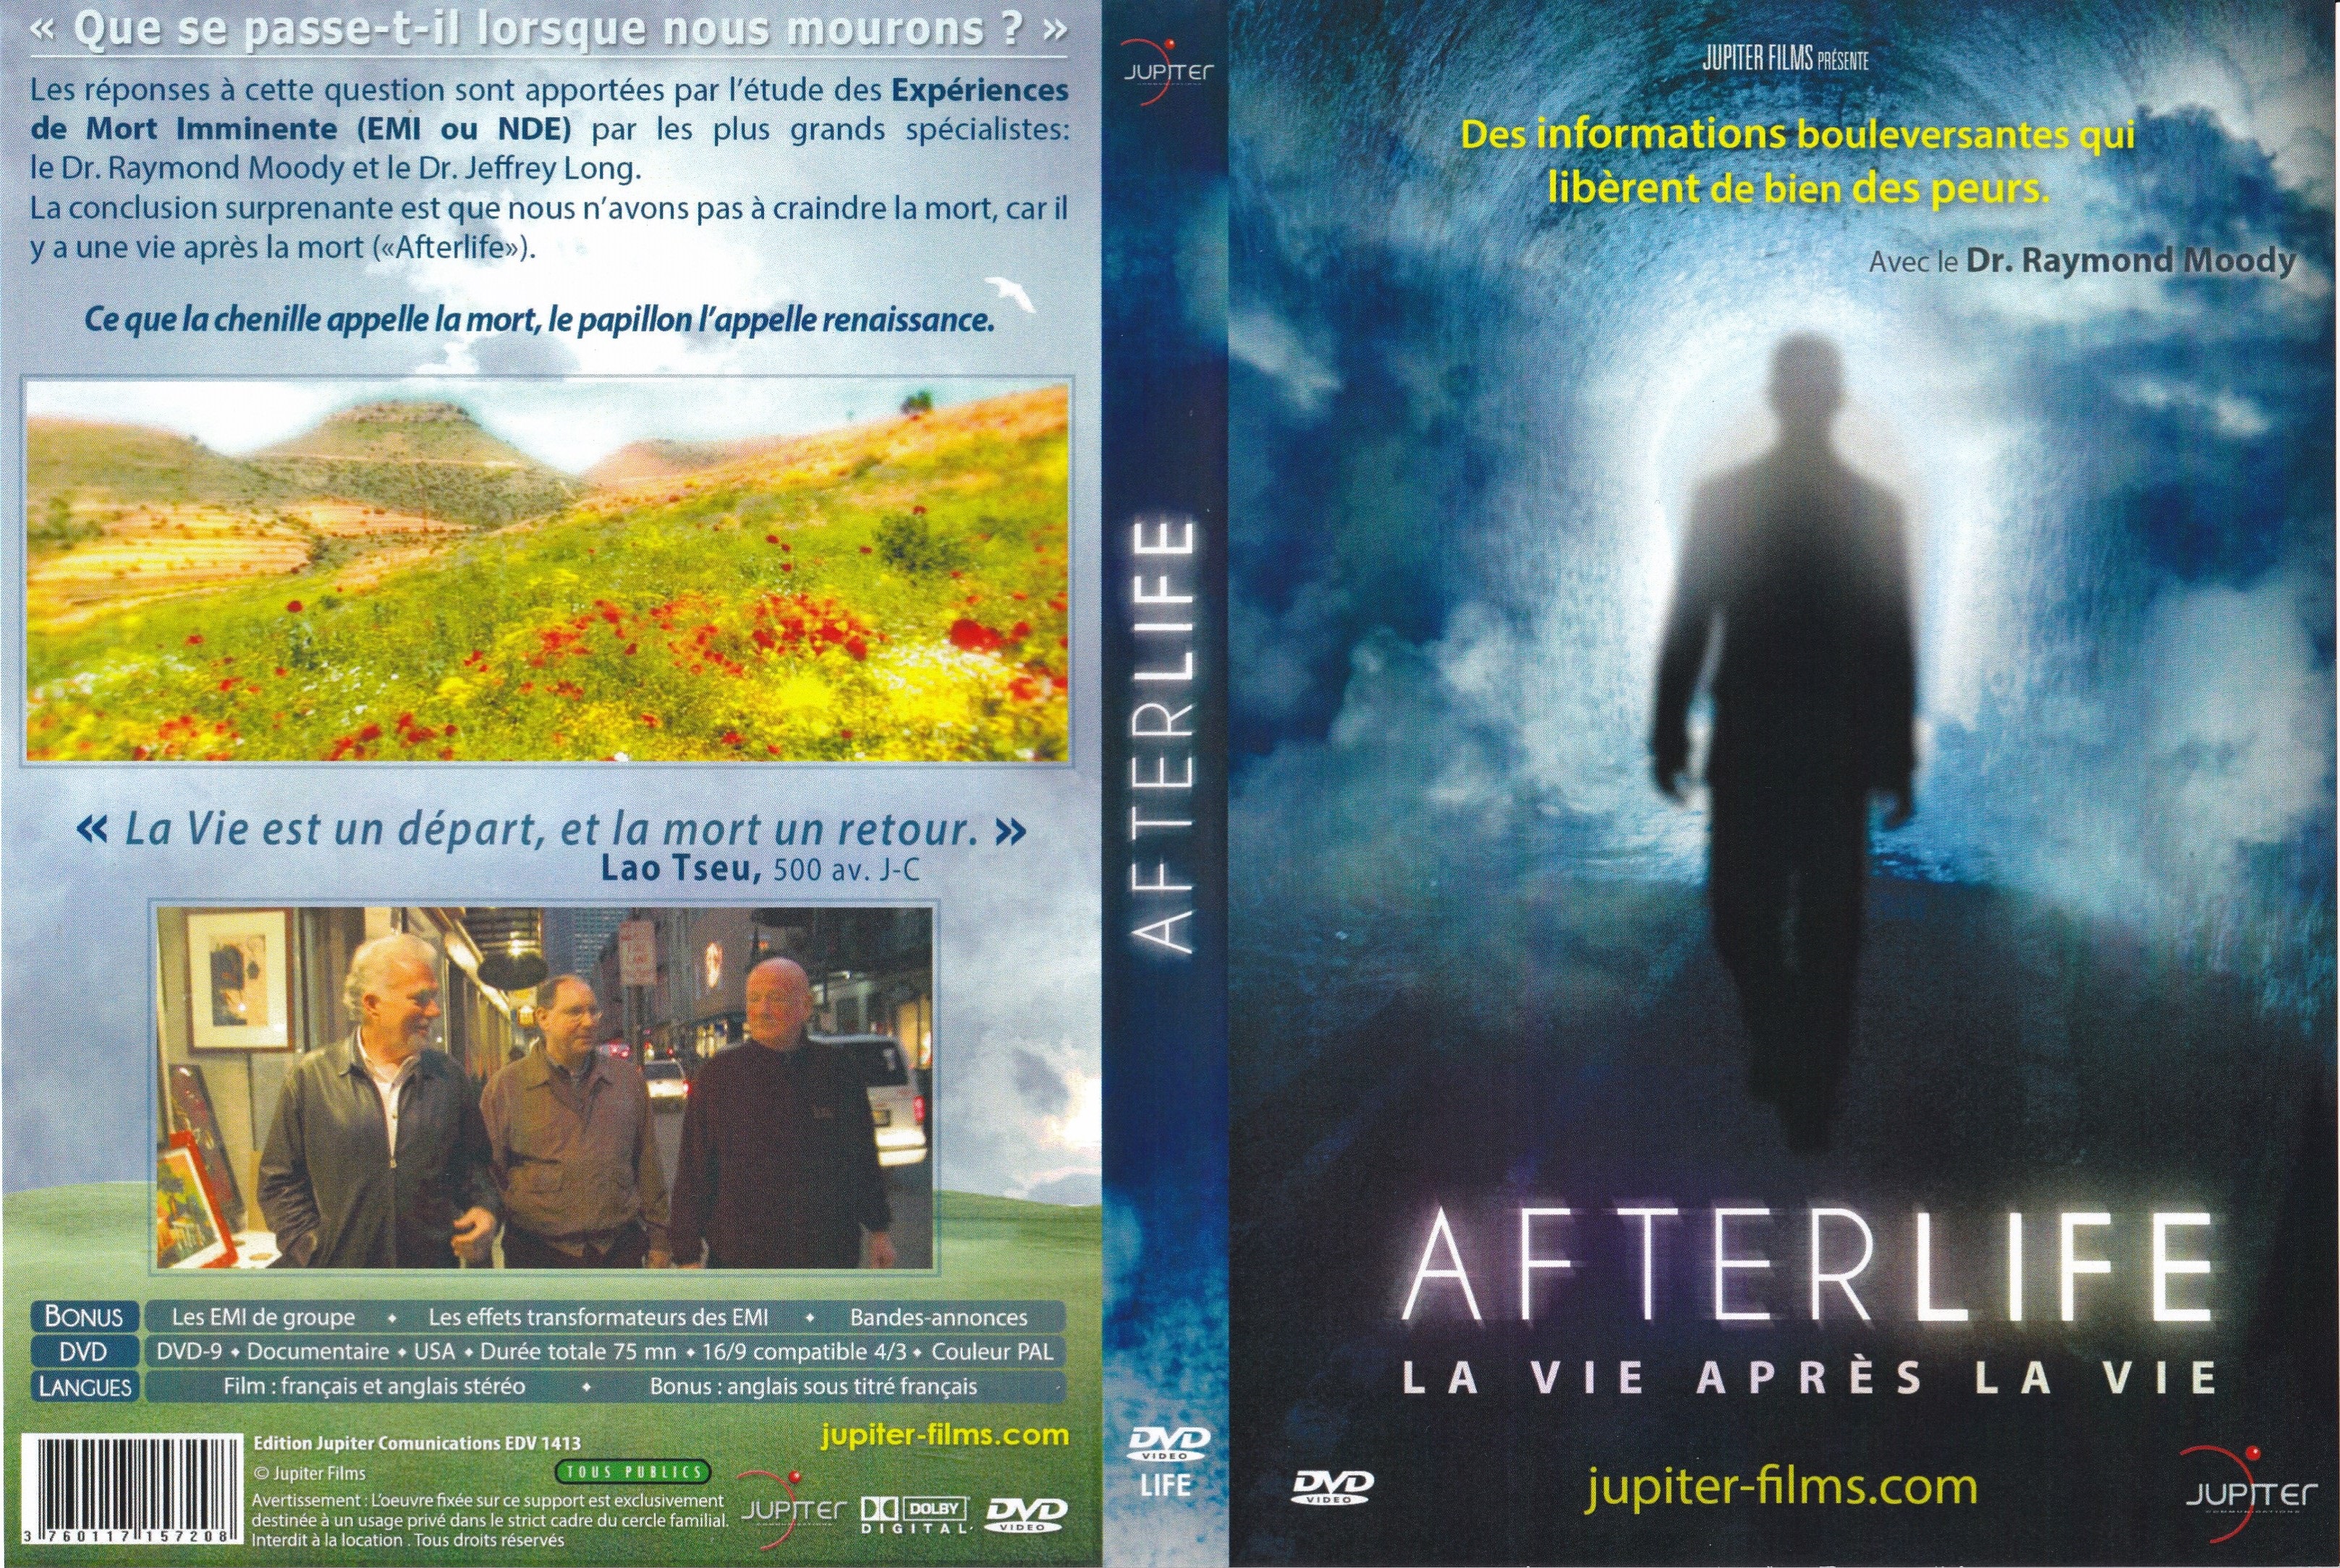 Jaquette DVD Afterlife - La Vie Apres la Vie